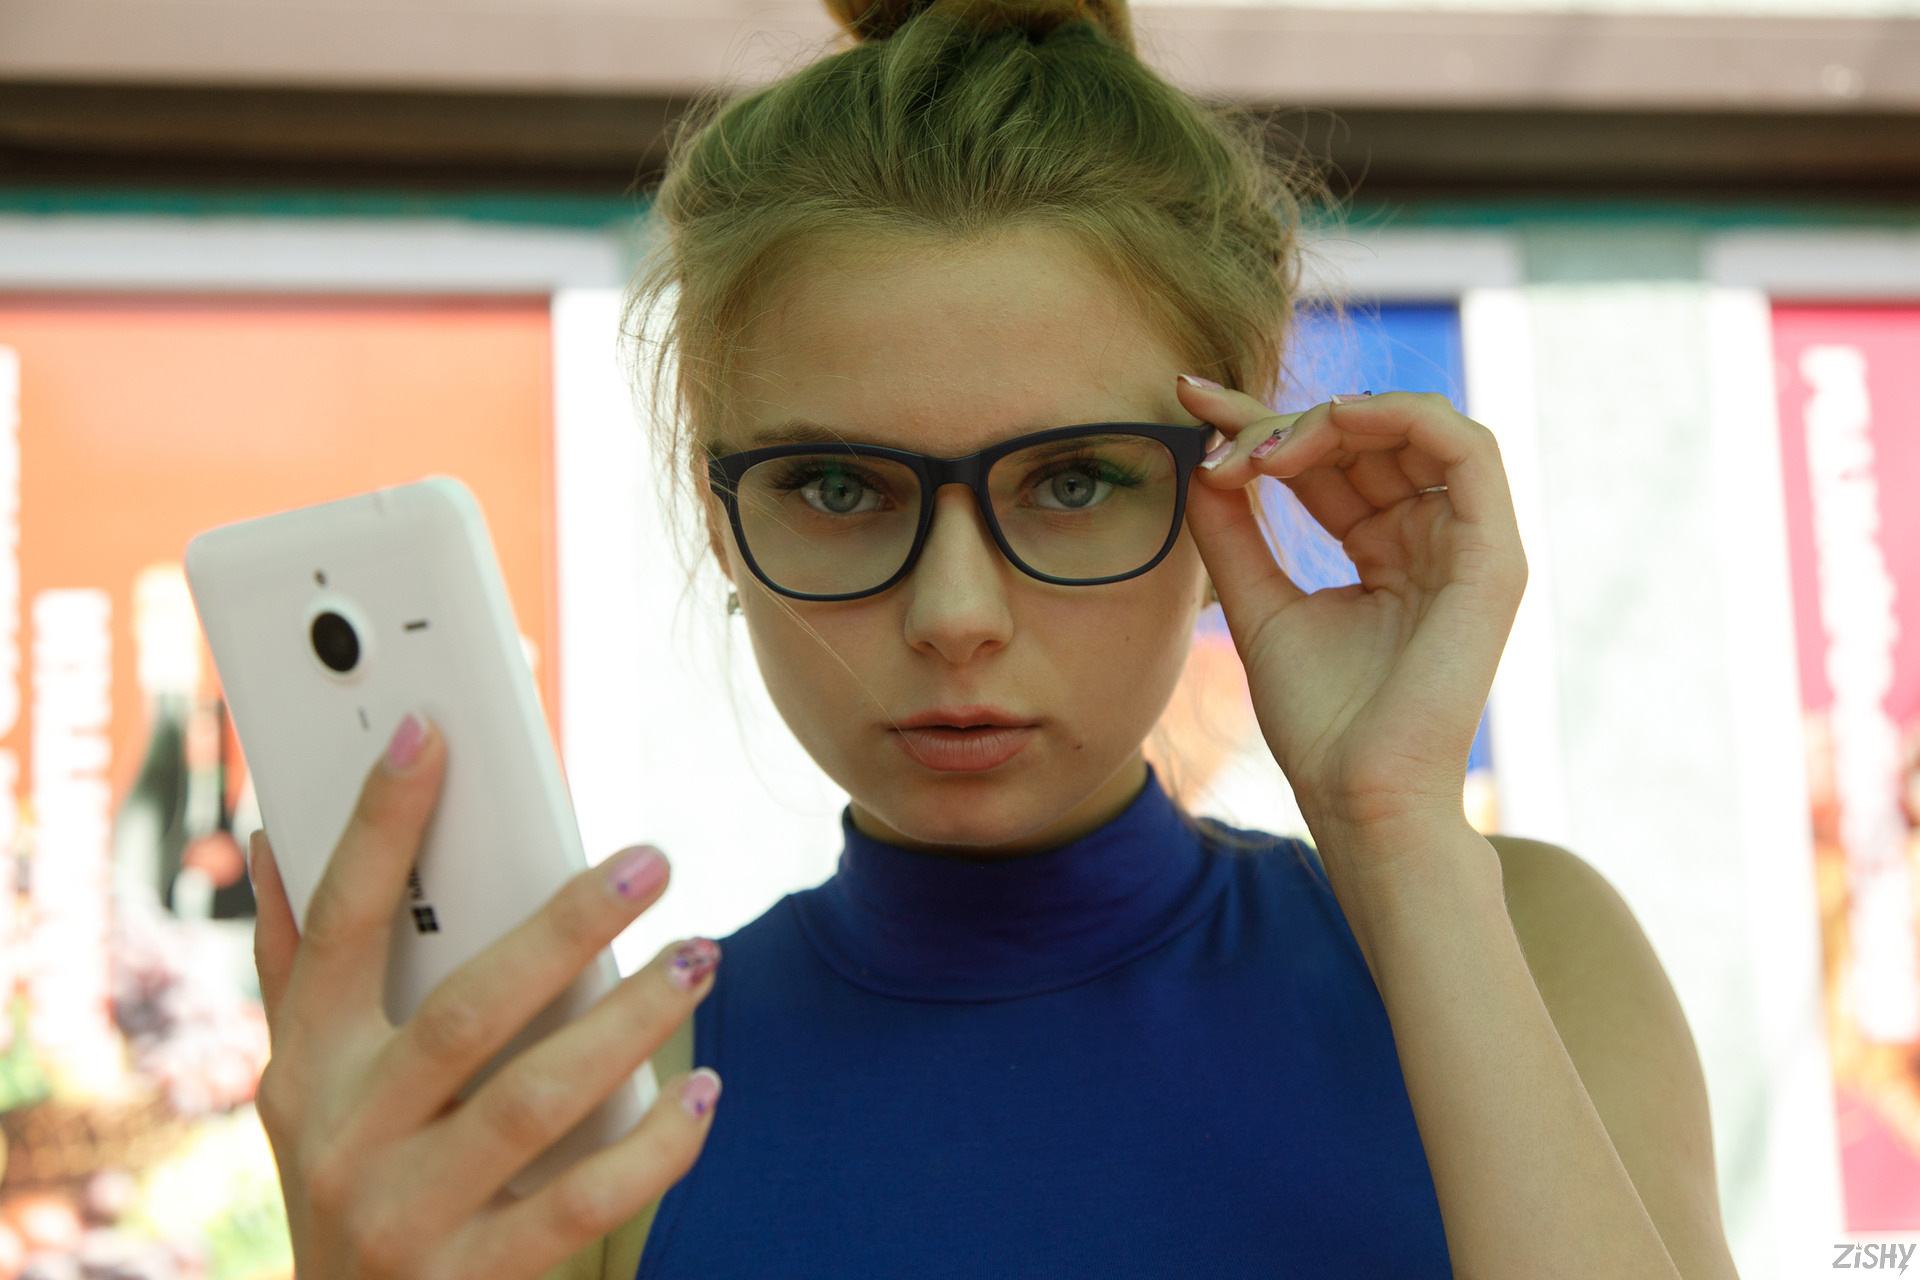 ulyana-orsk-flash-public-yantarny-glasses-tits-zishy-02